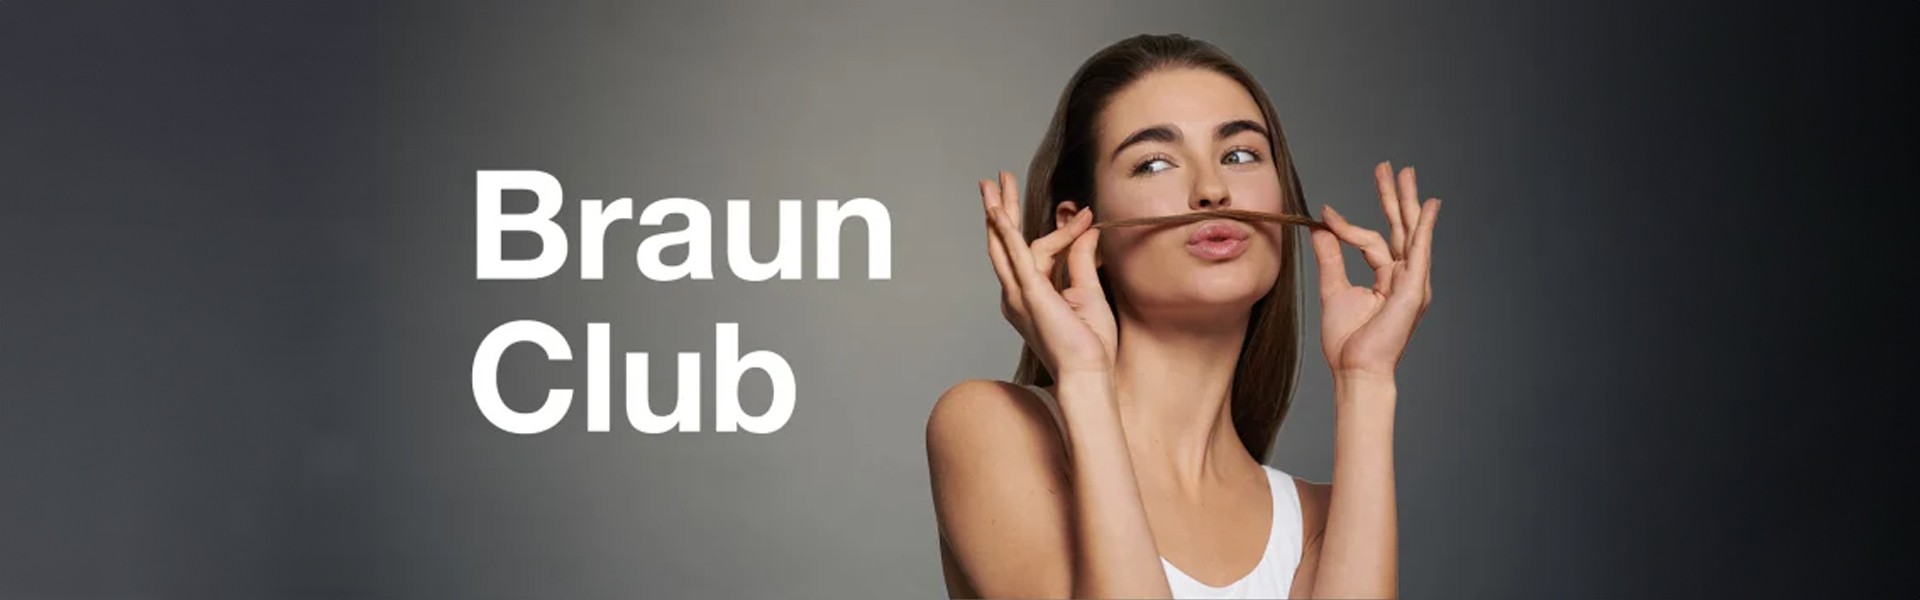 Braun Club